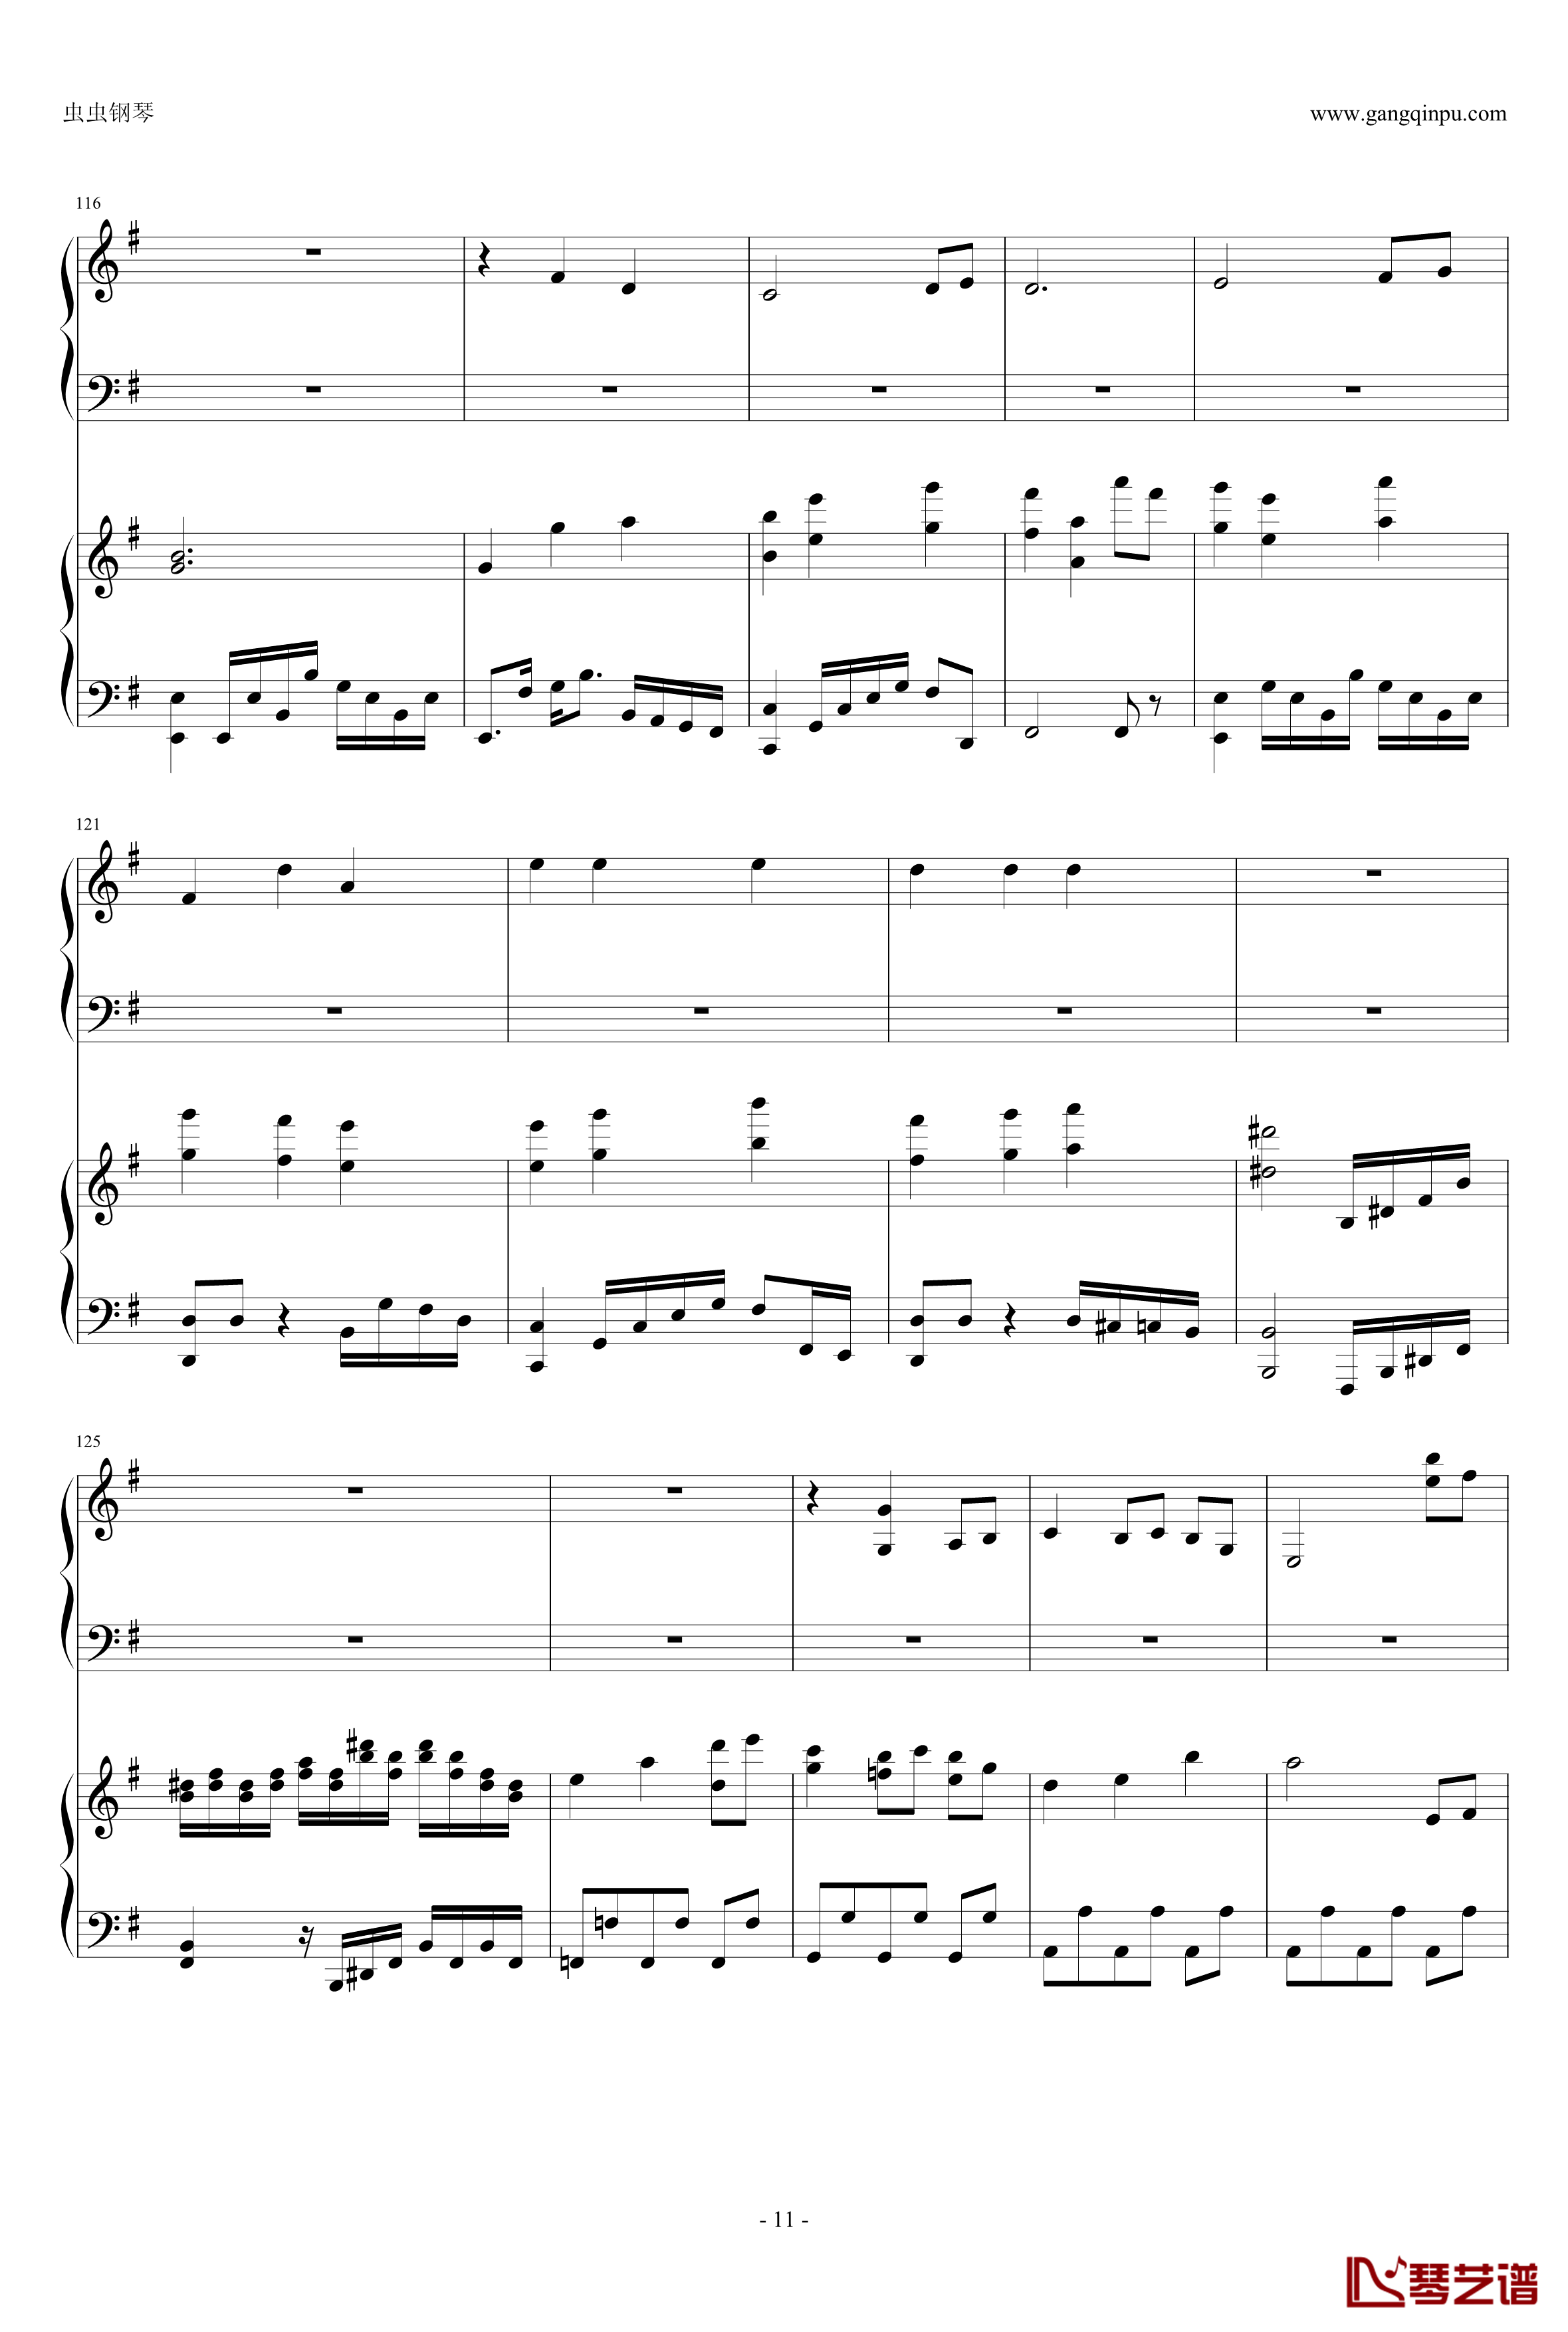 東方連奏曲II Pianoforte钢琴谱-第一部分-东方project11